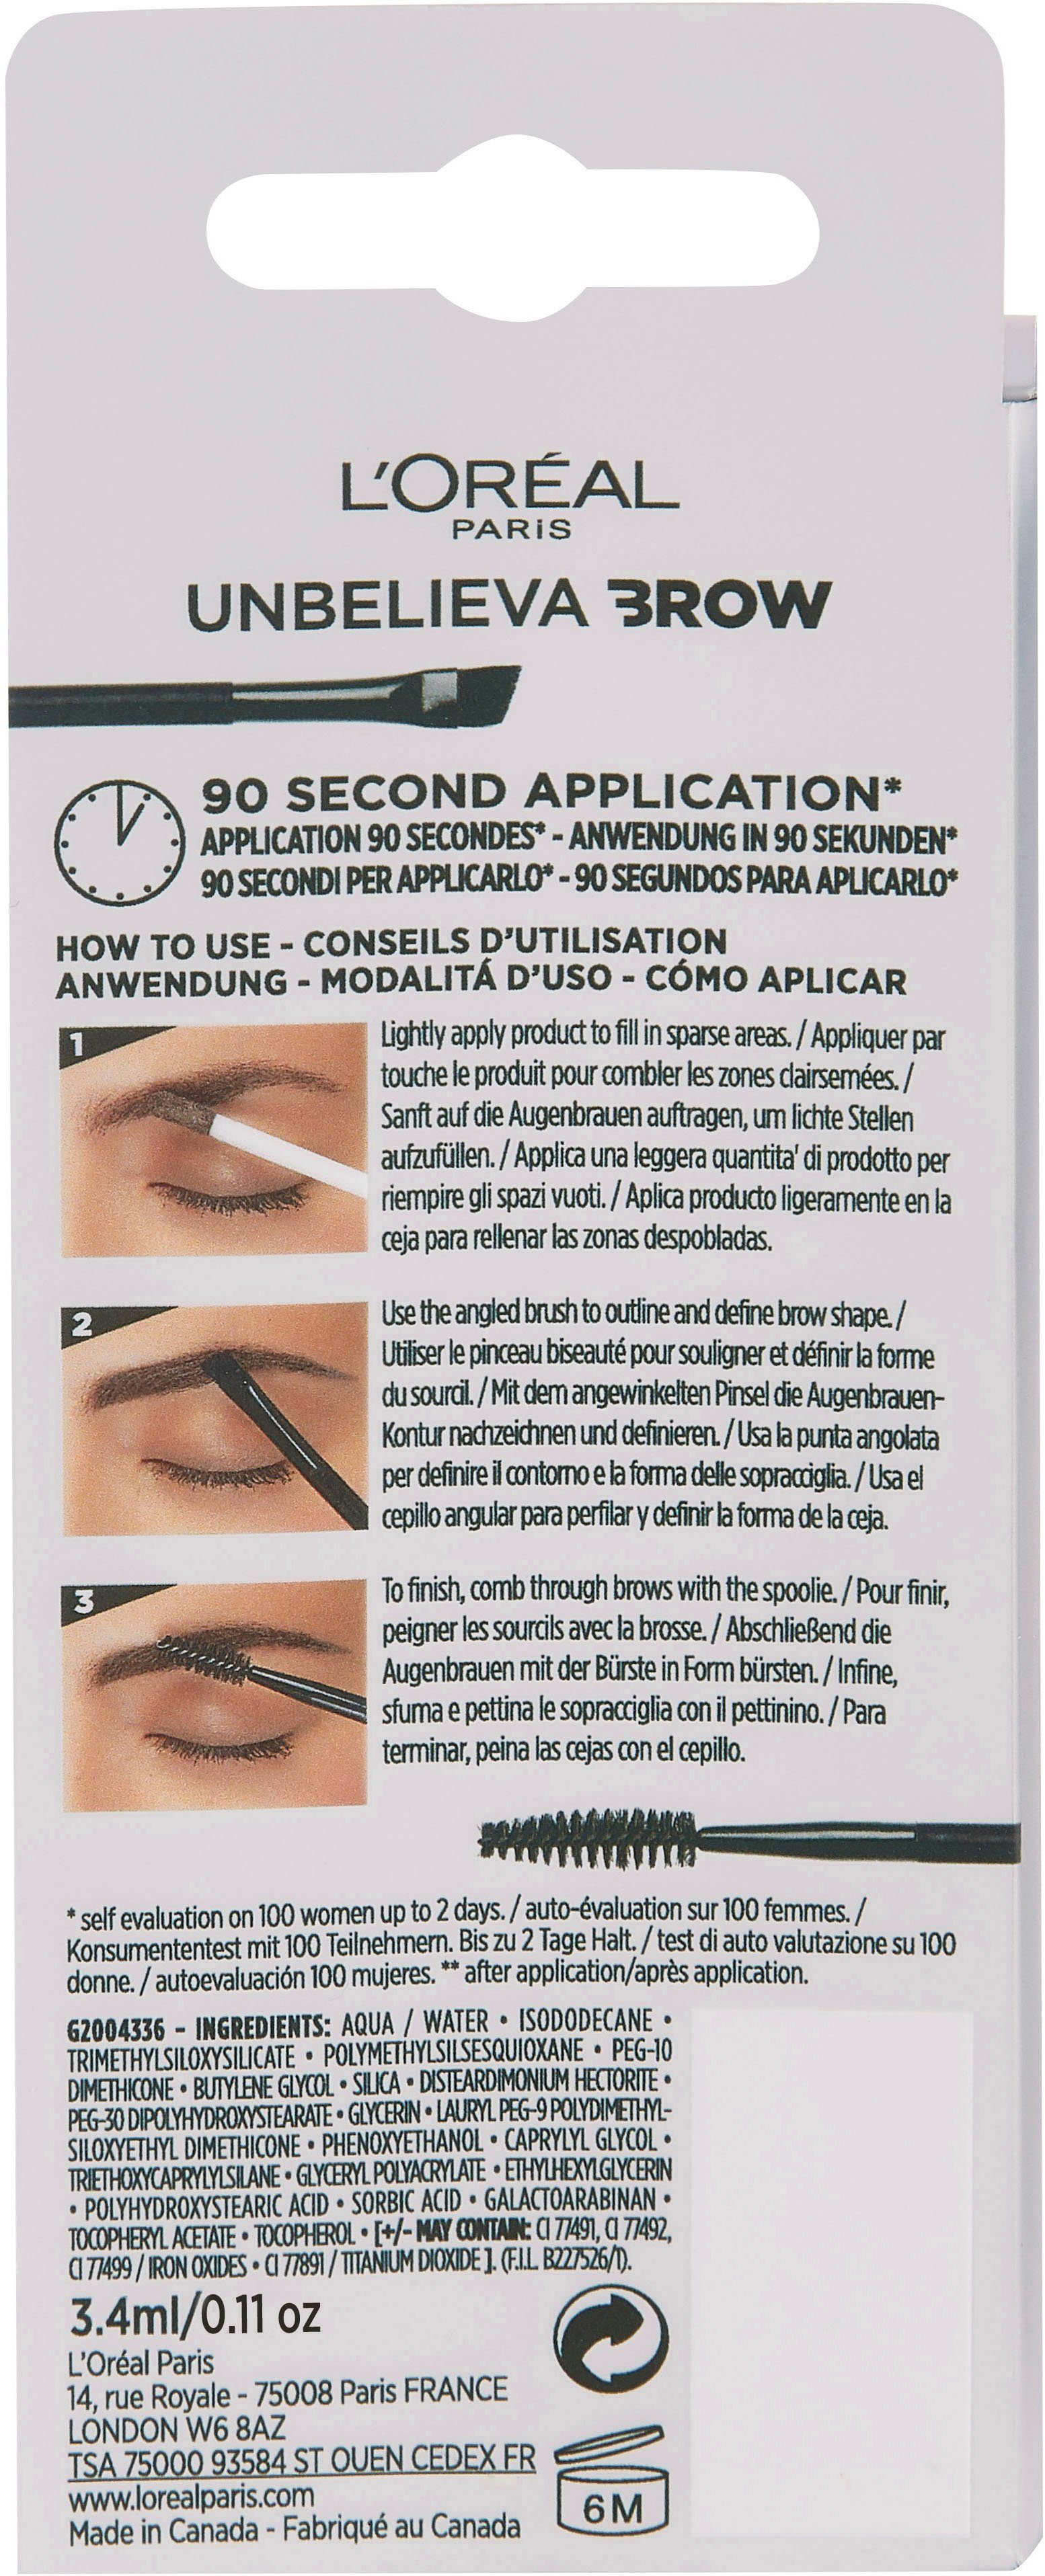 Unbelieva 3.0 Brunette Augen-Make-Up L'ORÉAL mit PARIS Brow, wischfest, Applikatoren, unterschiedlichen Augenbrauen-Gel